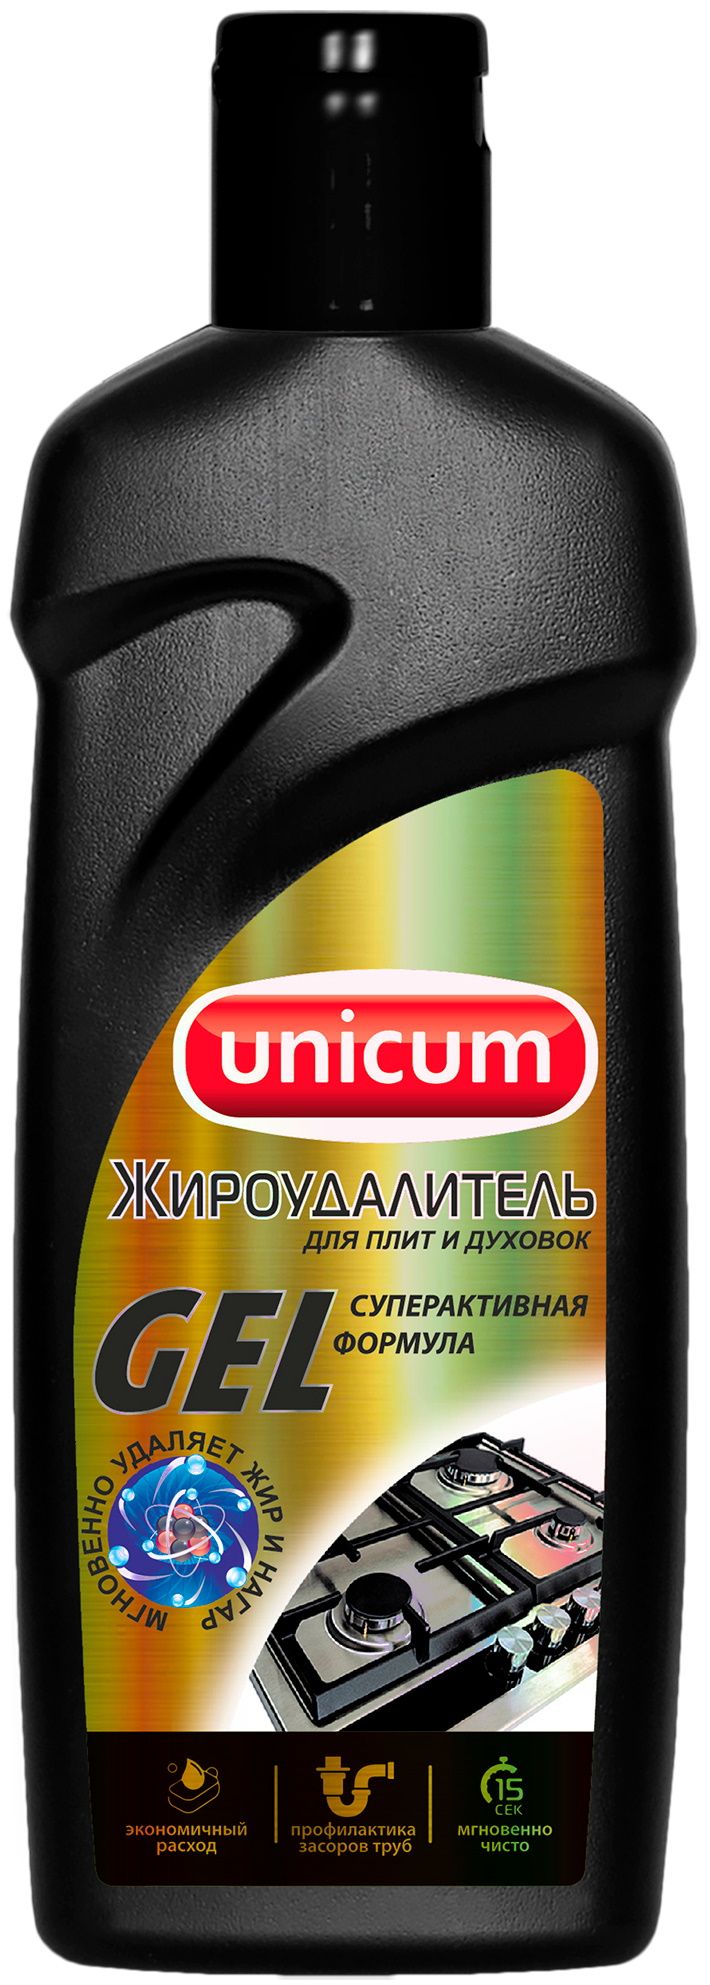 Unicum жироудалитель гель 380мл